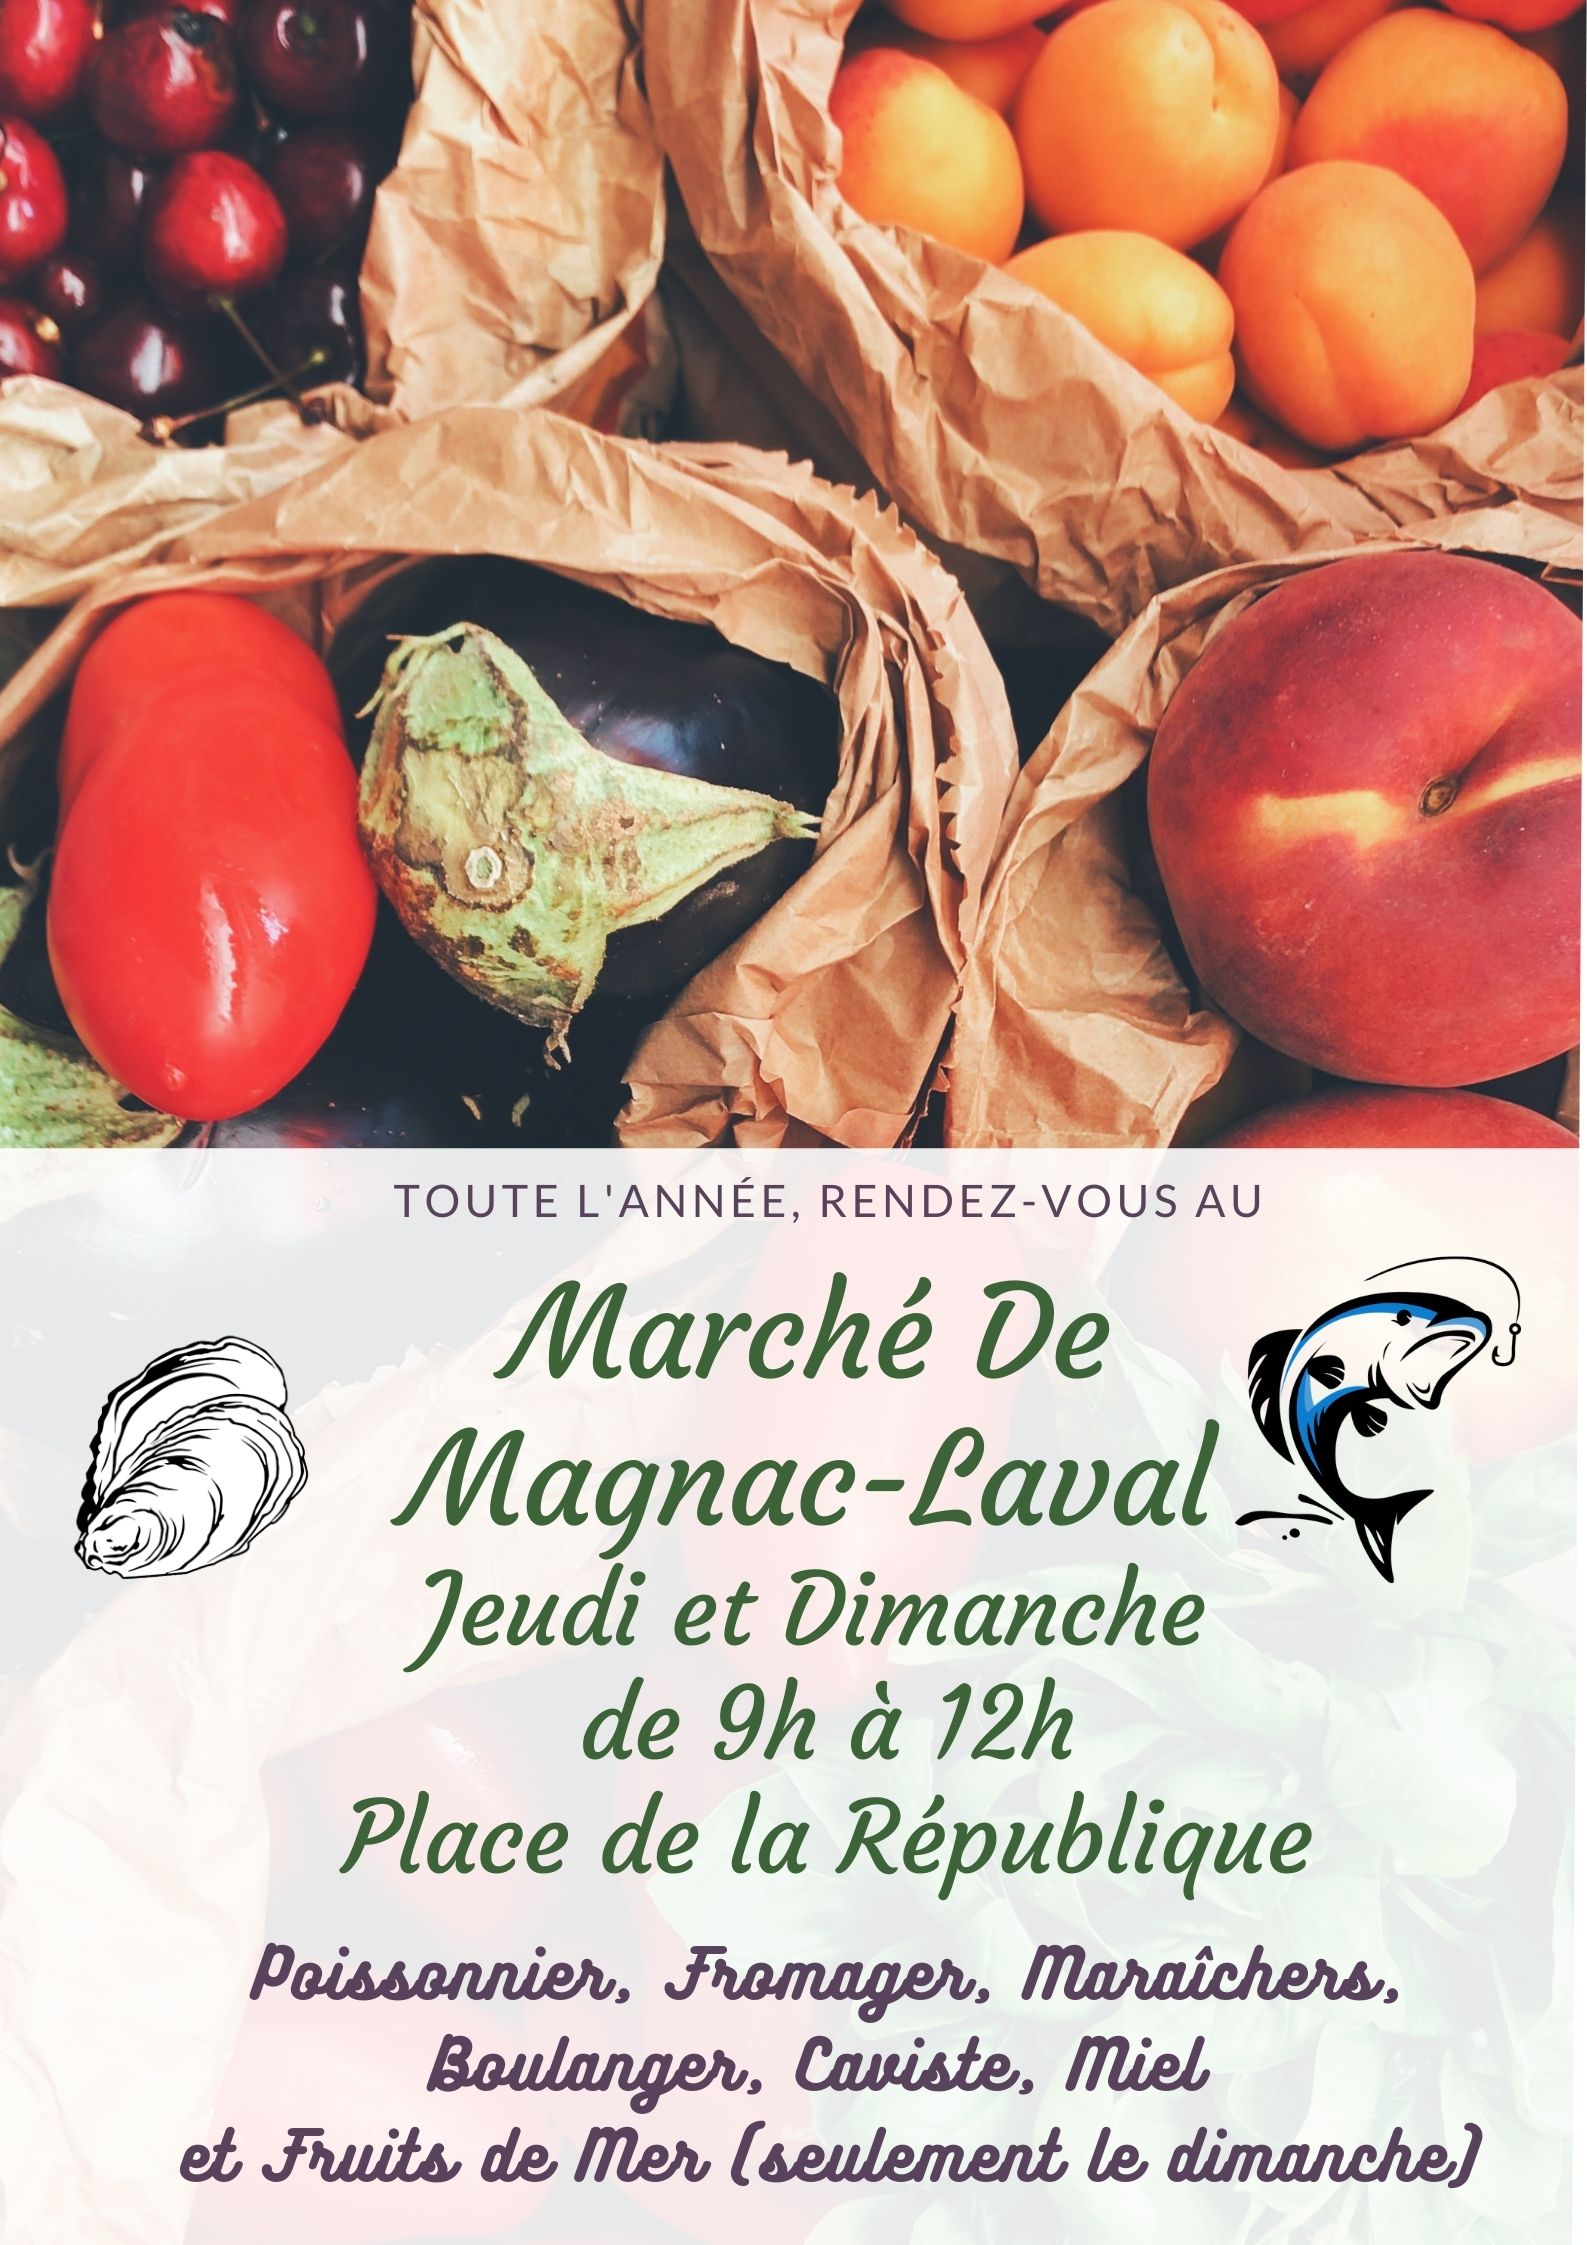 Marché De Magnac-Laval.jpg